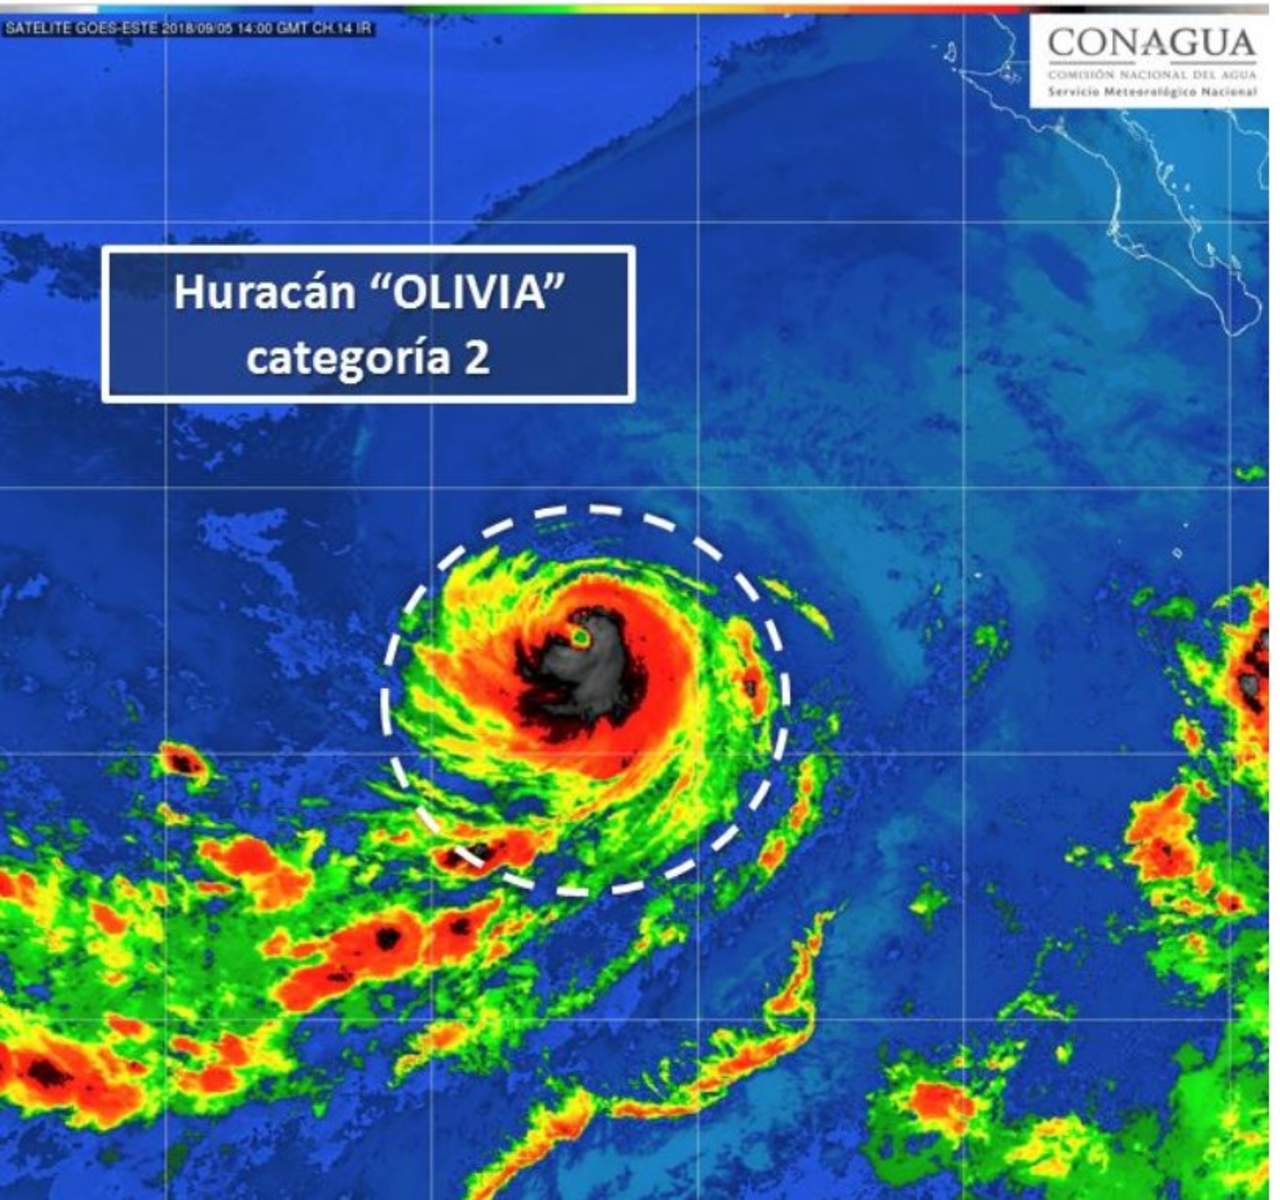 El Servicio Meteorológico Nacional (SMN) informó que el huracán Olivia, de categoría 2 en la escala Saffir-Simpson, mantiene su desplazamiento hacia el oeste, alejándose de costas nacionales. (TWITTER)
